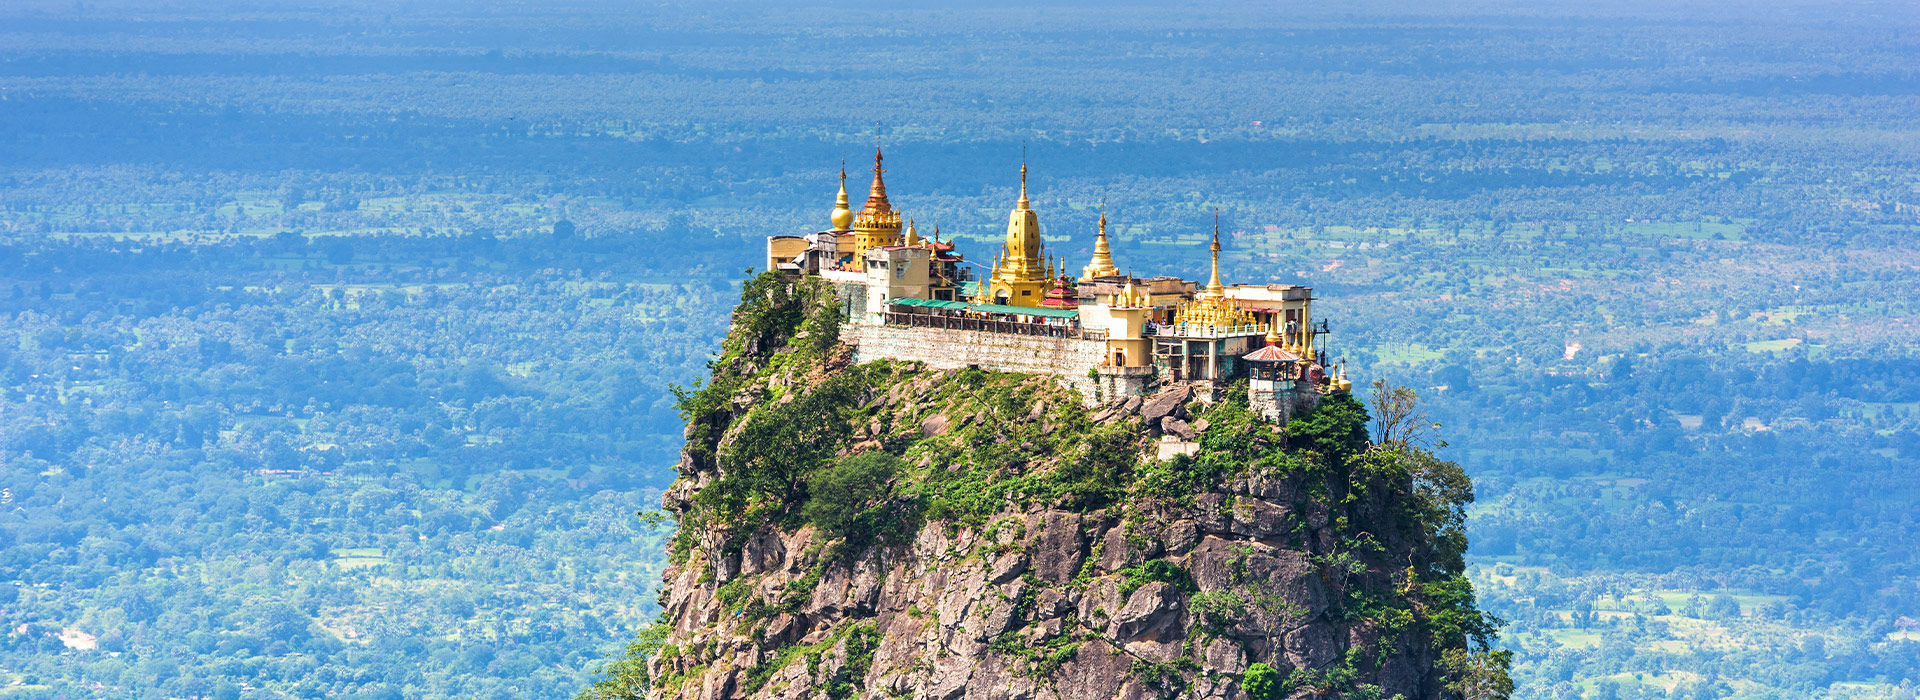 Reisen nach Myanmar - Individuelle Reisen nach Myanmar - Harry Kolb AG - Tourismus